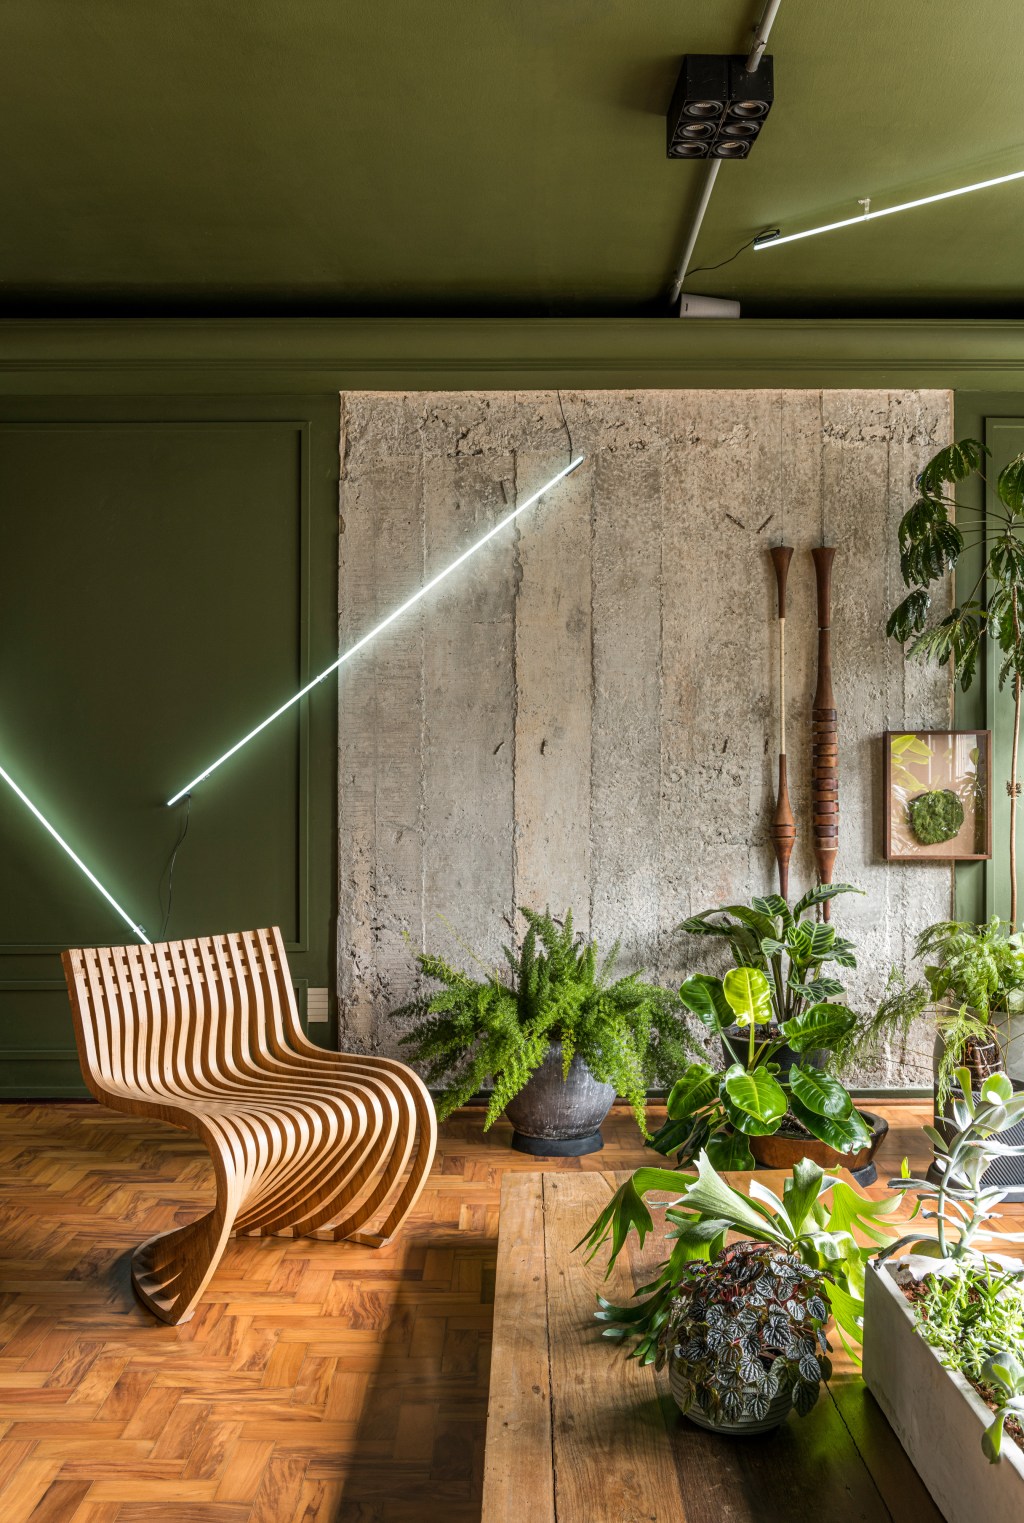 Sala de estar em cinza e verde e poltrona de madeira